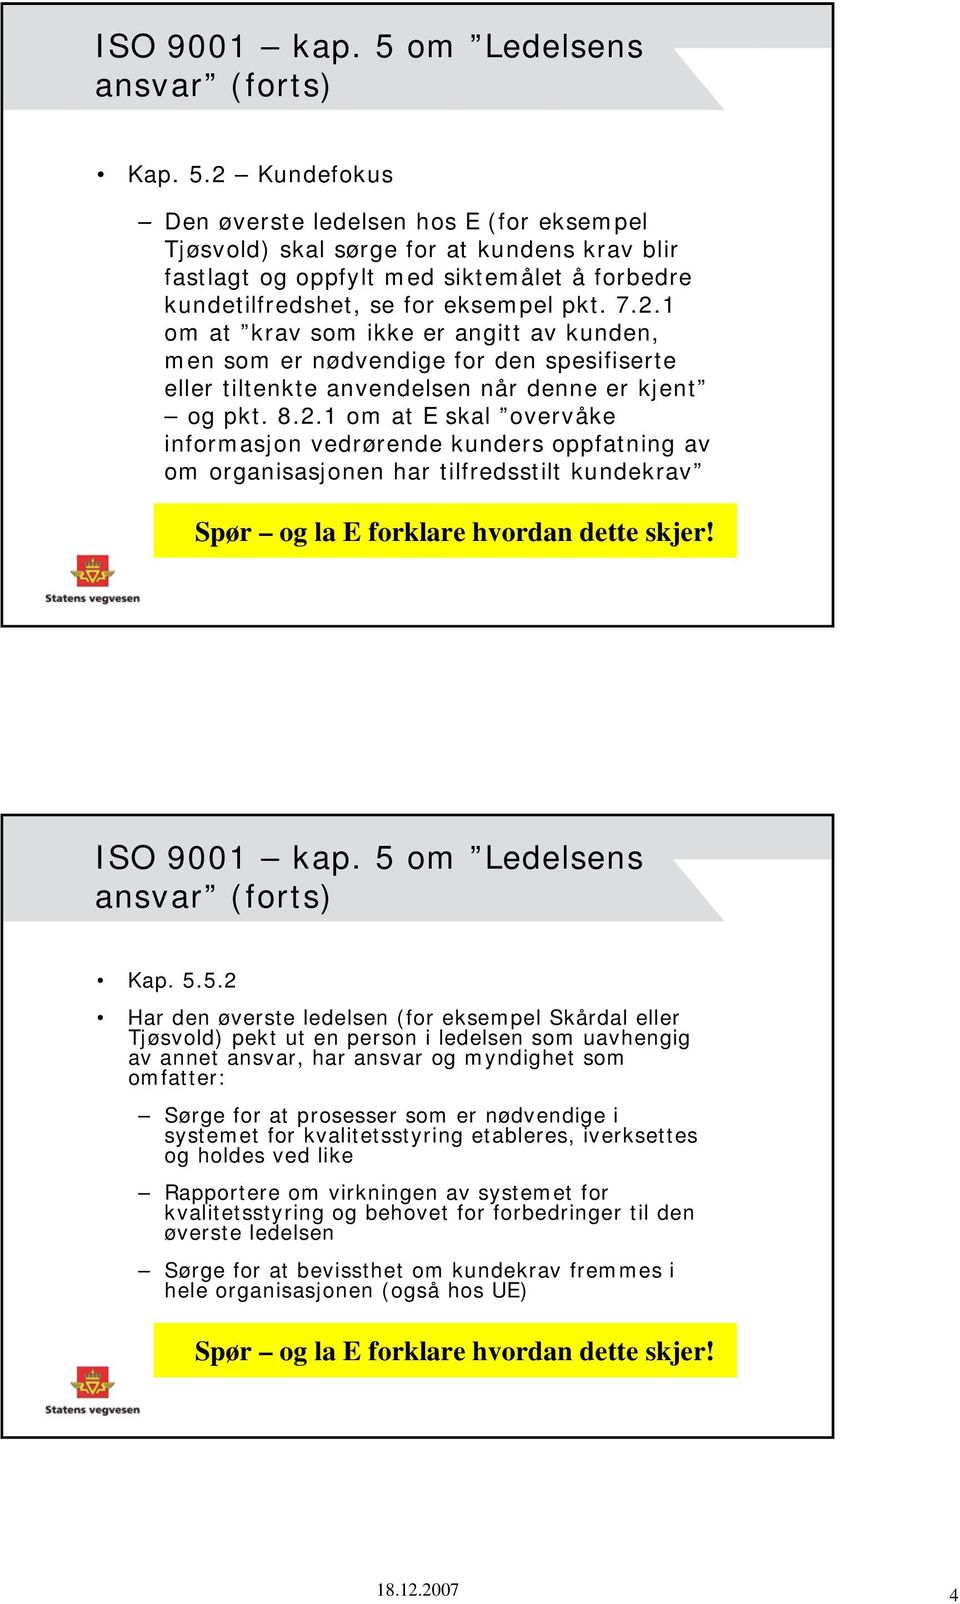 ISO 9001 kap. 5 